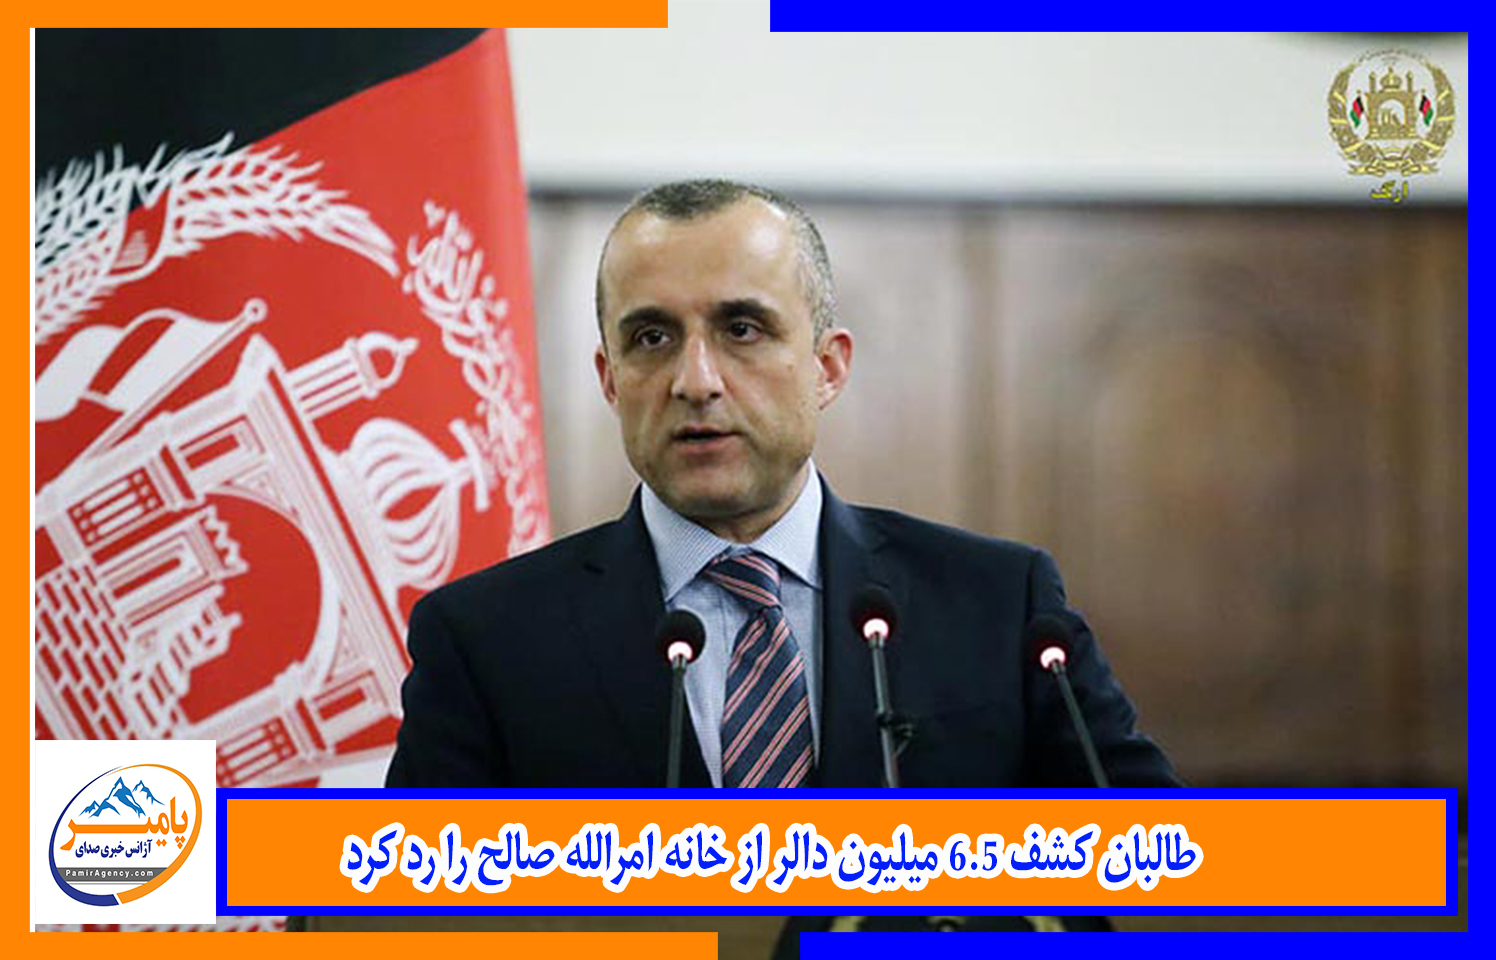 طالبان کشف ۶٫۵ میلیون دالر از خانه امرالله صالح را رد کرد